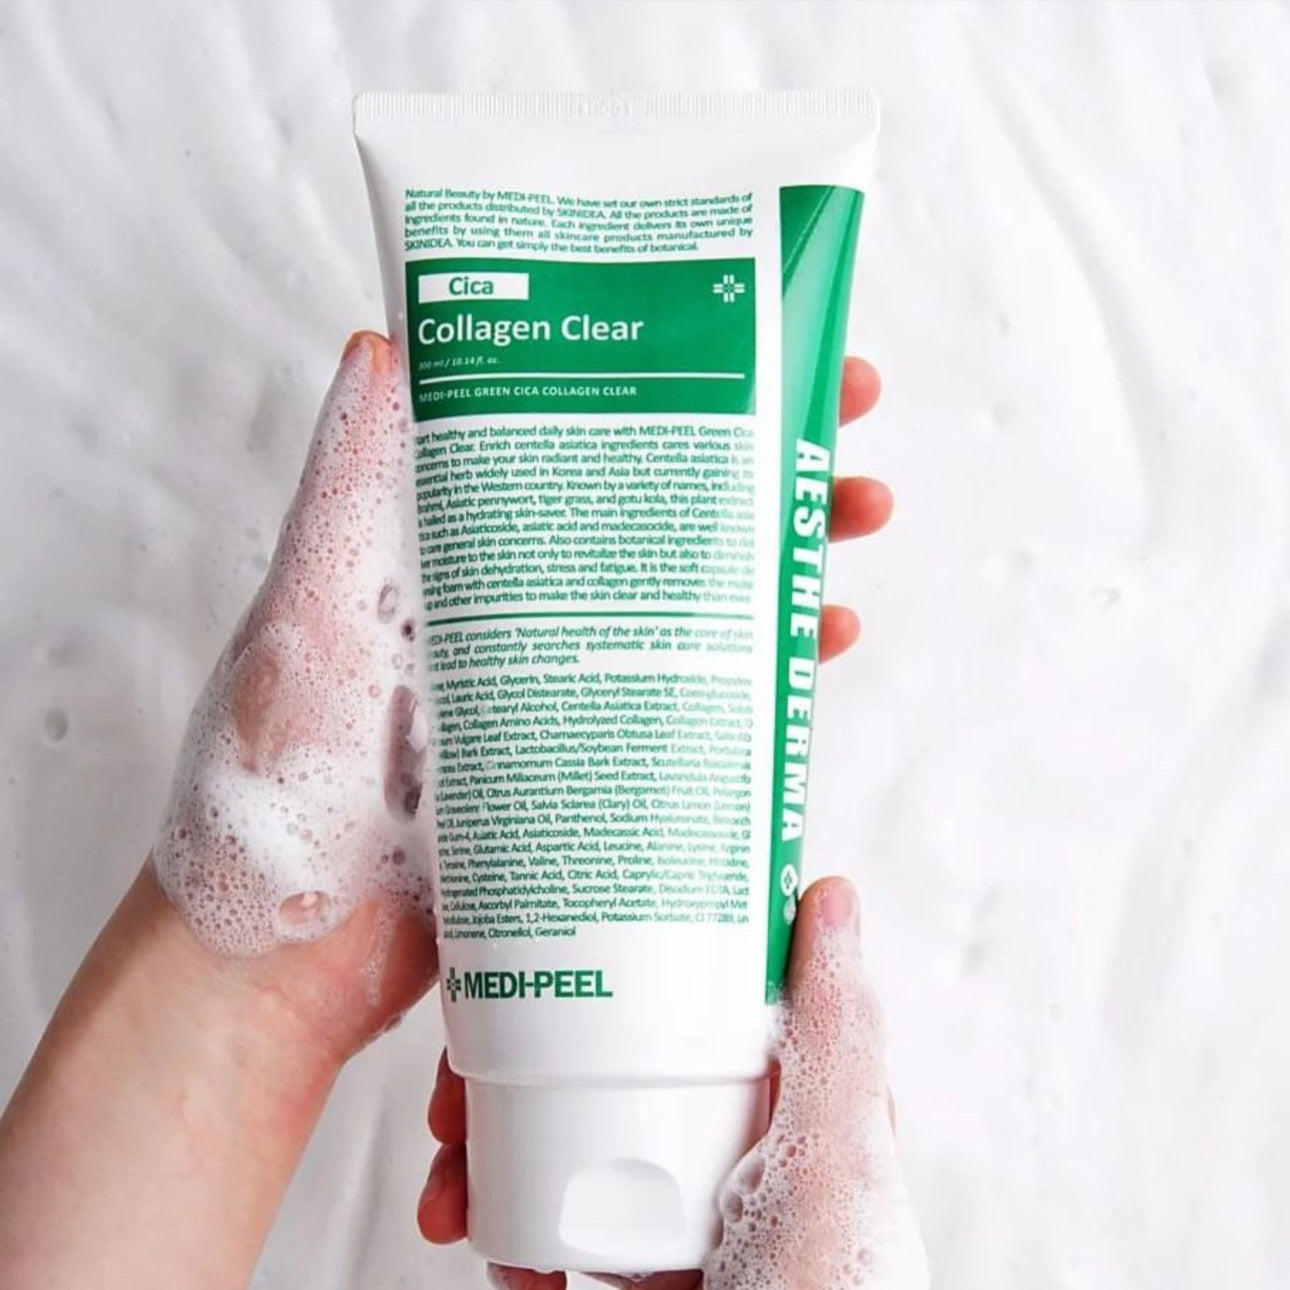 Cica Collagen clear foam for sensitive skin by Medi-peel